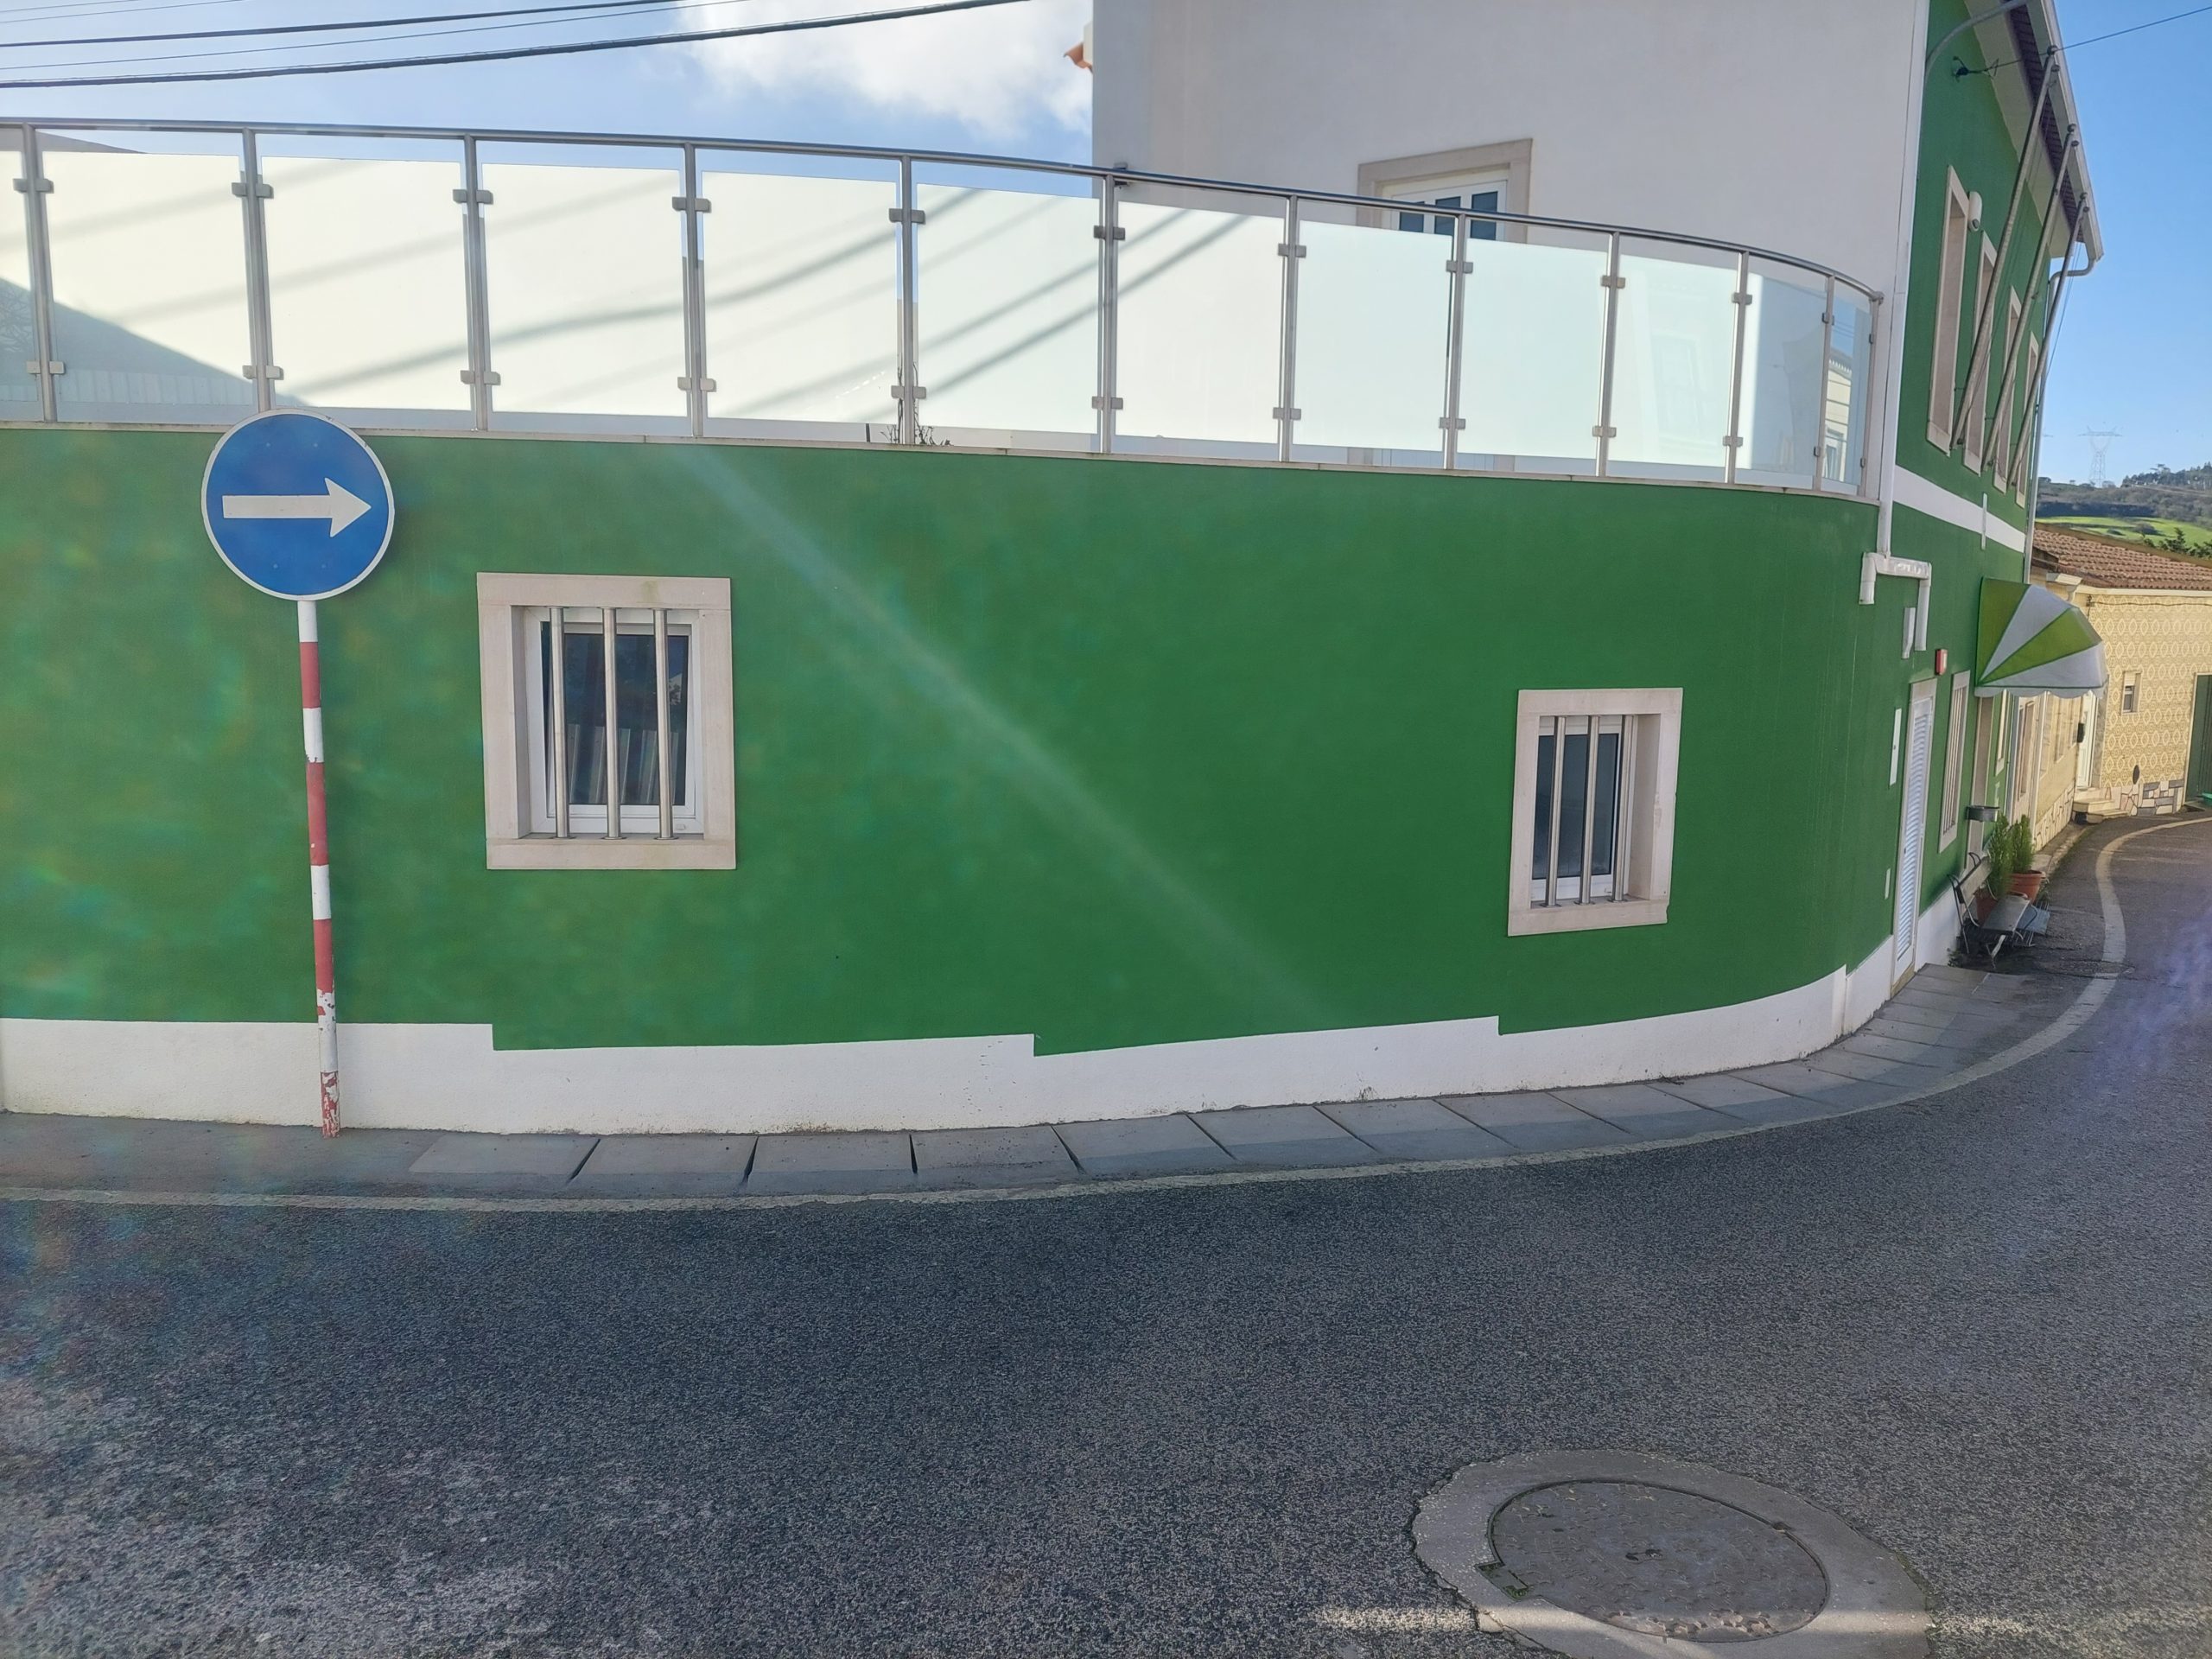 CASAINHOS (c)- Rua 1º de maio, criação de nova zona pedonal, facilitando a passagem de pessoas de mobilidade reduzida melhorando a mobilidade e aumentando a segurança da população!